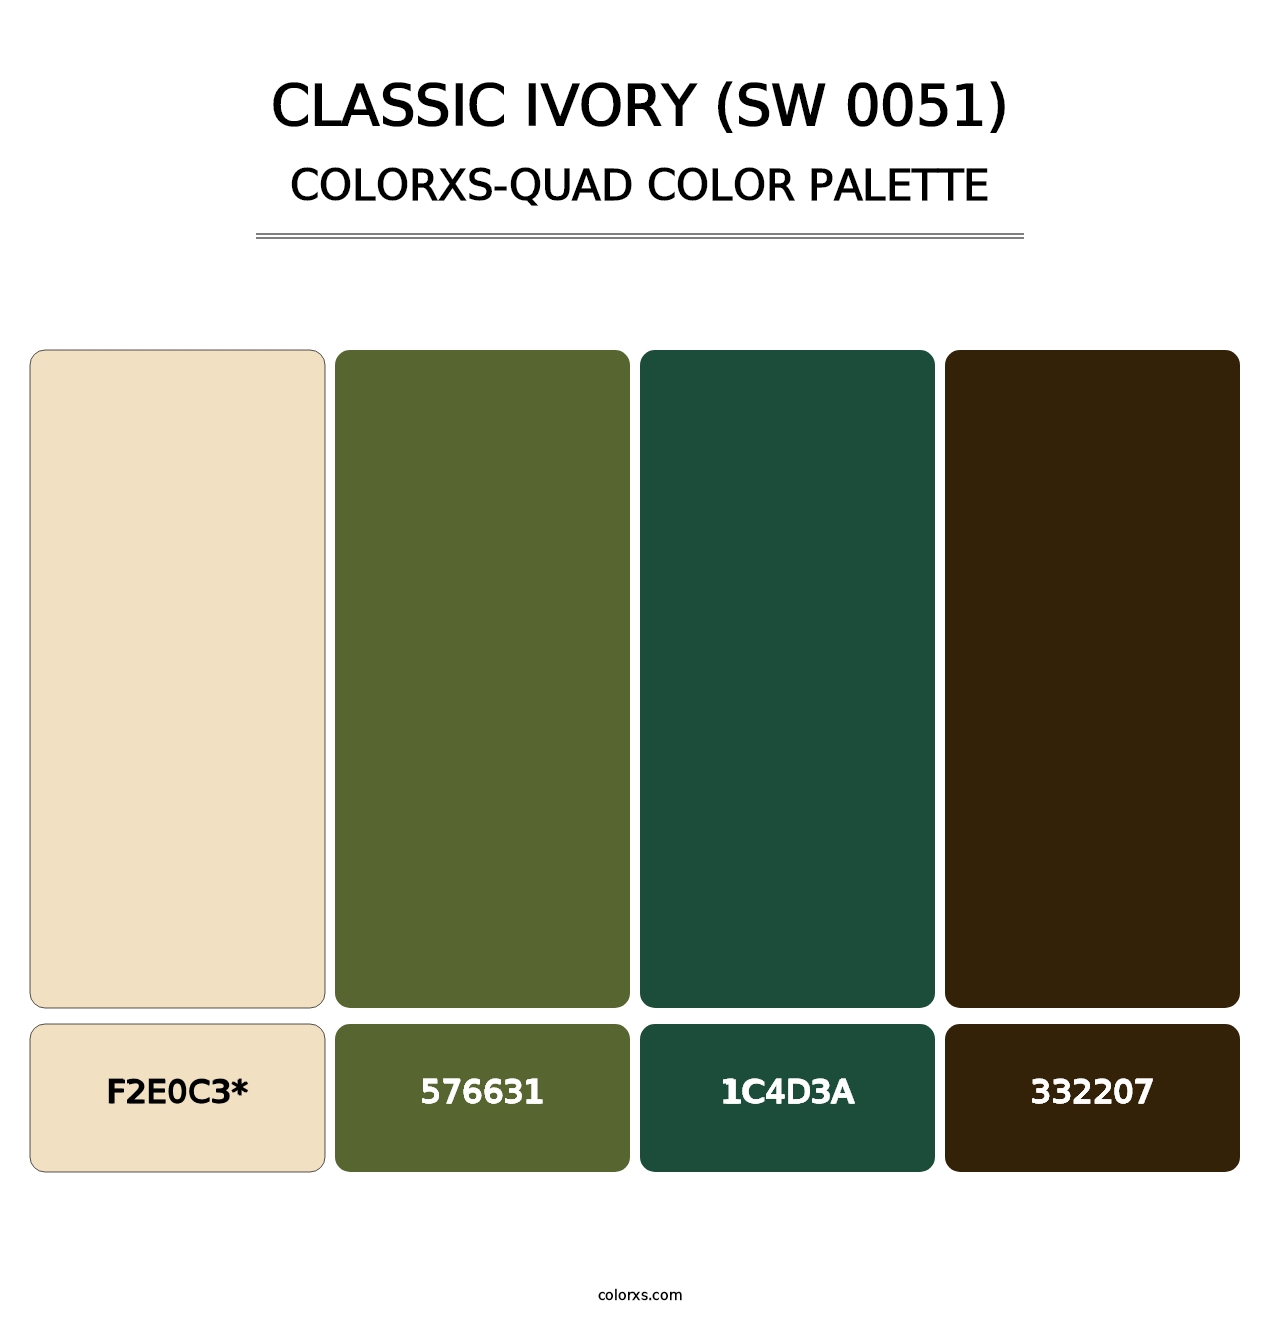 Classic Ivory (SW 0051) - Colorxs Quad Palette